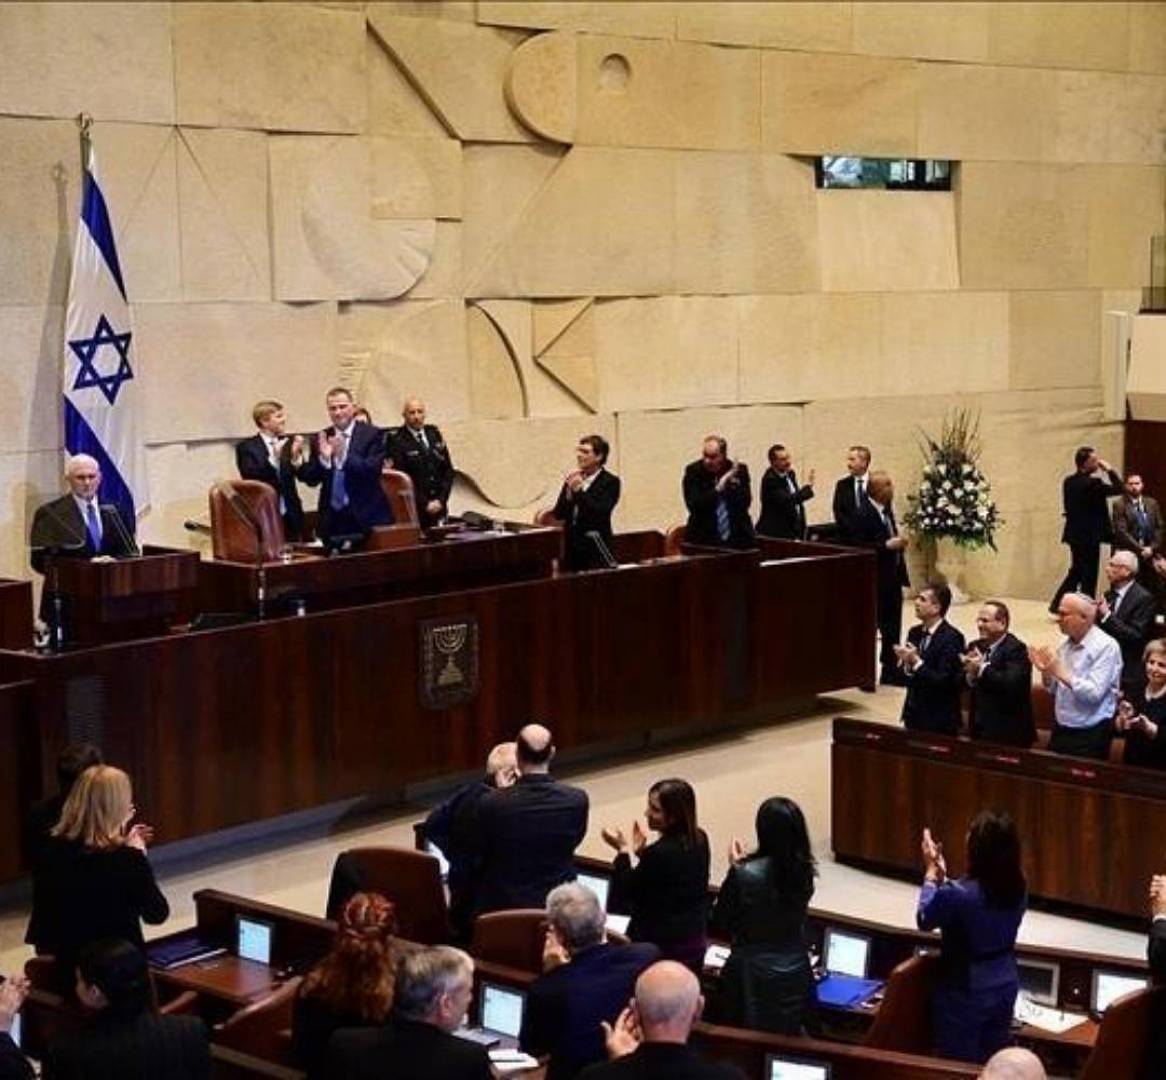 المعارضة الإسرائيلية تعتزم طرح مشروع قانون لحل الكنيست